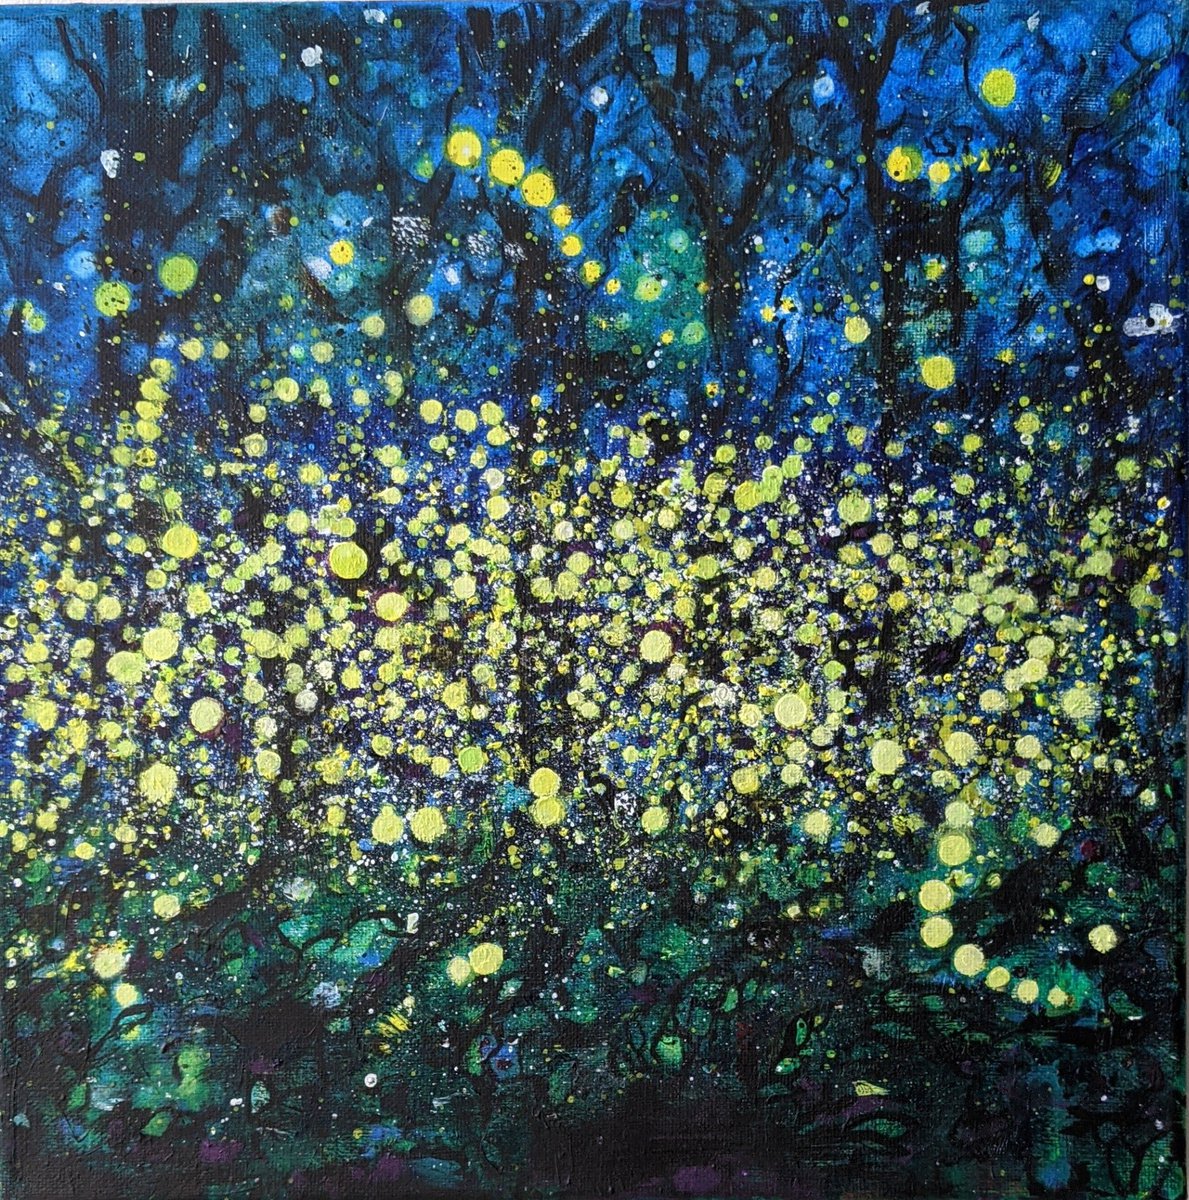 Dark Sky - Fireflies by Cat Maclean